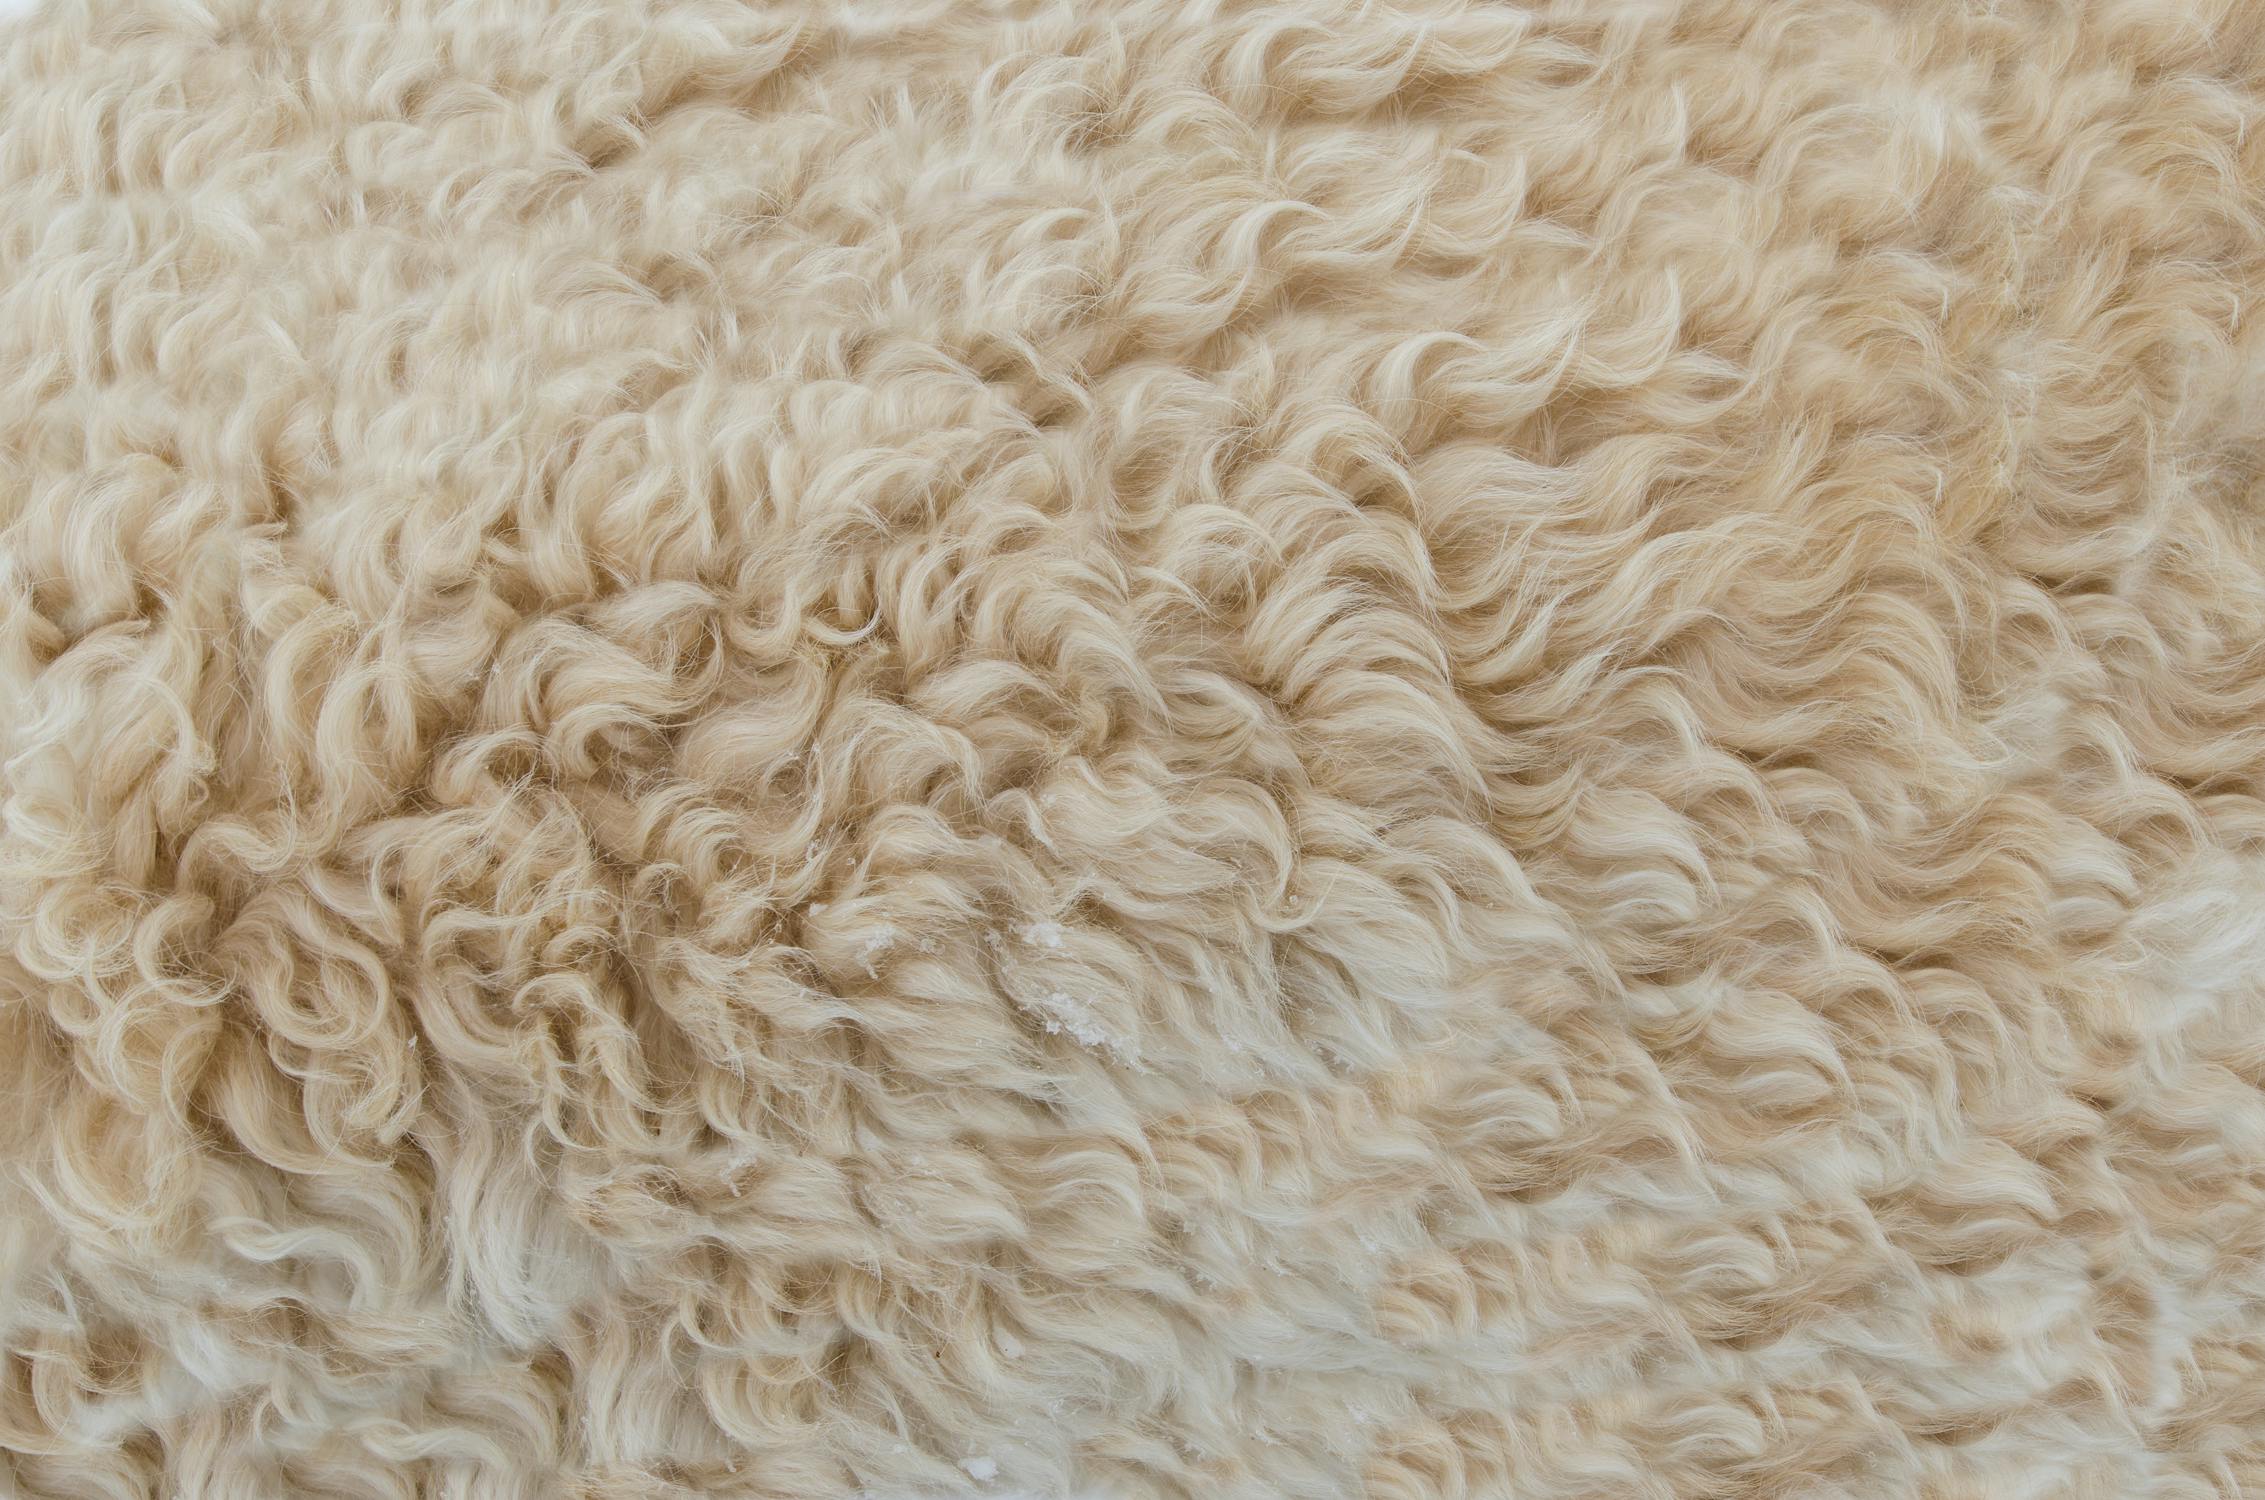 Không phải tất cả các loại len đều như nhau. Loại len làm từ lông cừu merino là mềm mại nhất. (Ảnh: John Carnemolla/Shutterstock, Lukas/Pexels)